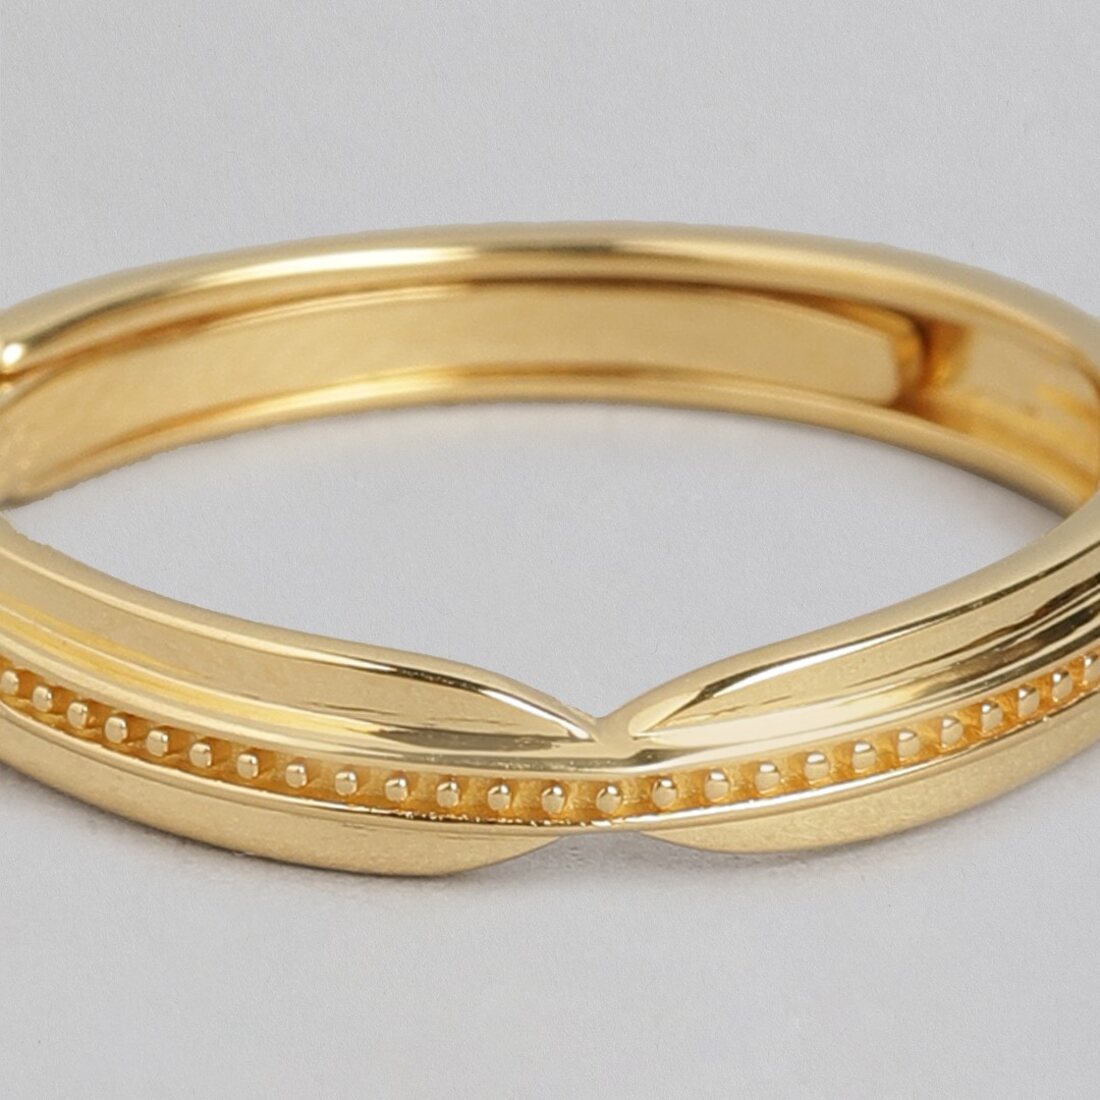 Radiant Sunburst Gold-Plated 925 Sterling Silver Adjustable Ring for Him (Adjustable)